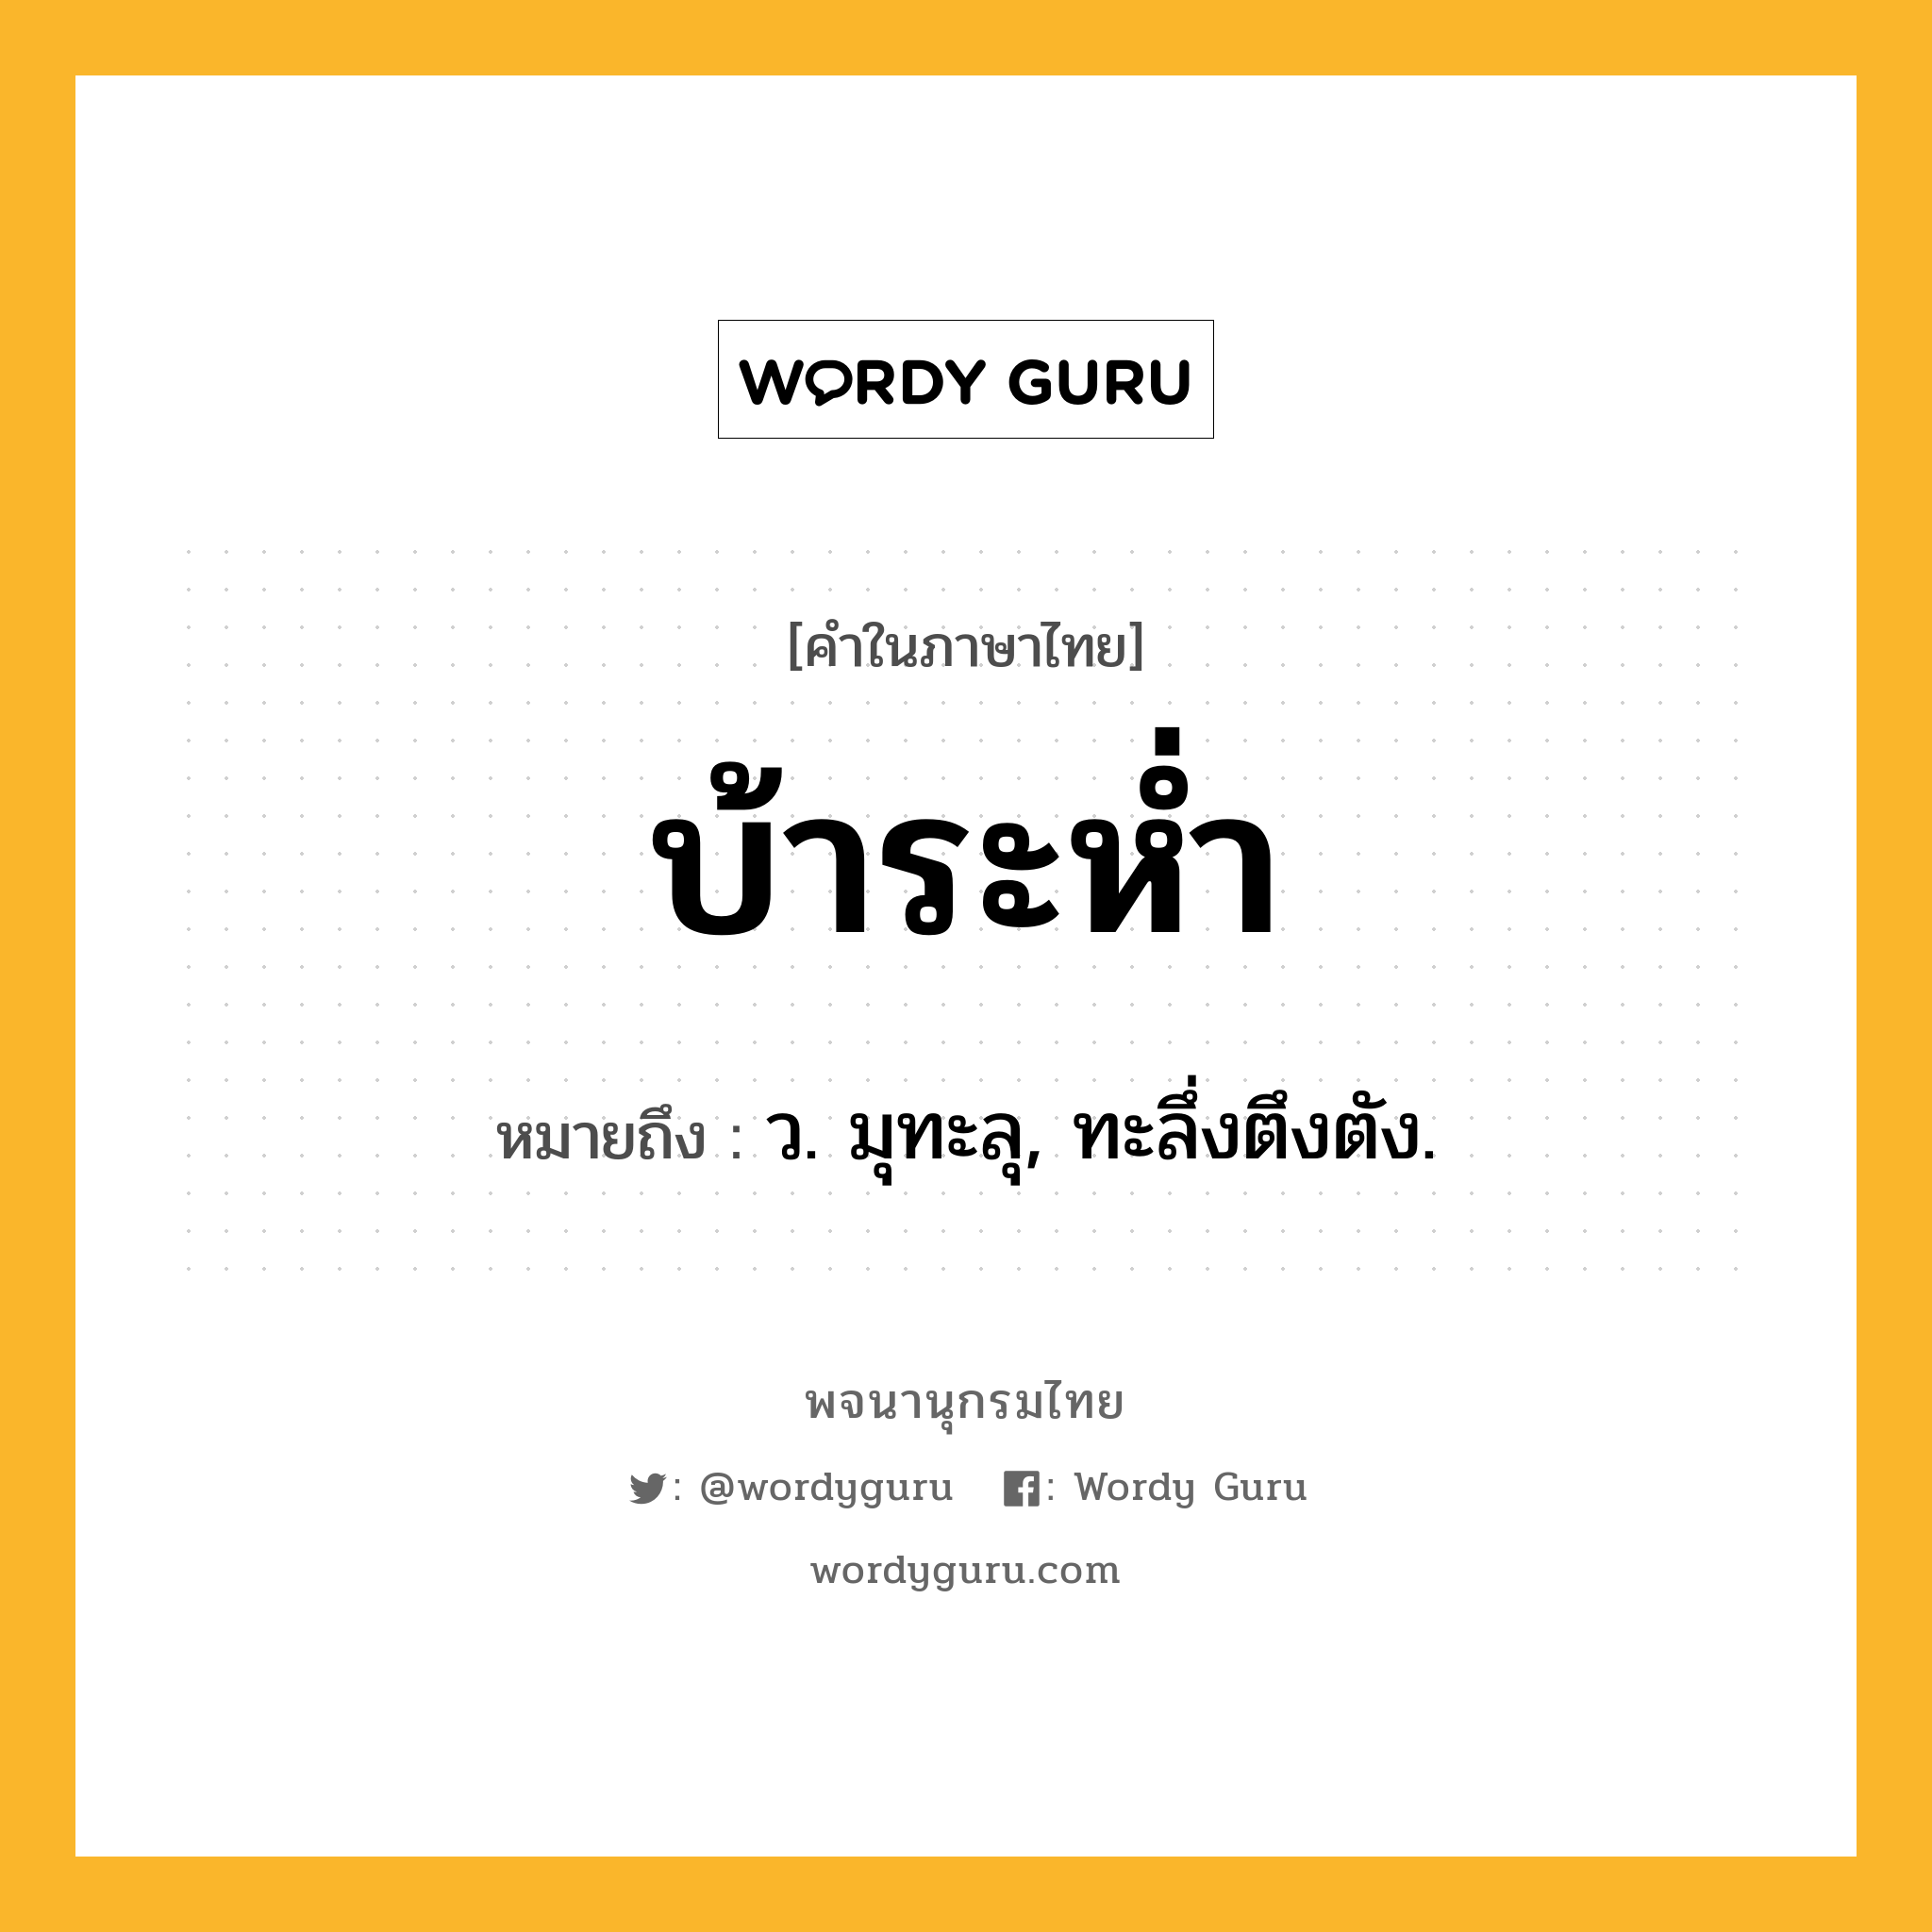 บ้าระห่ำ ความหมาย หมายถึงอะไร?, คำในภาษาไทย บ้าระห่ำ หมายถึง ว. มุทะลุ, ทะลึ่งตึงตัง.